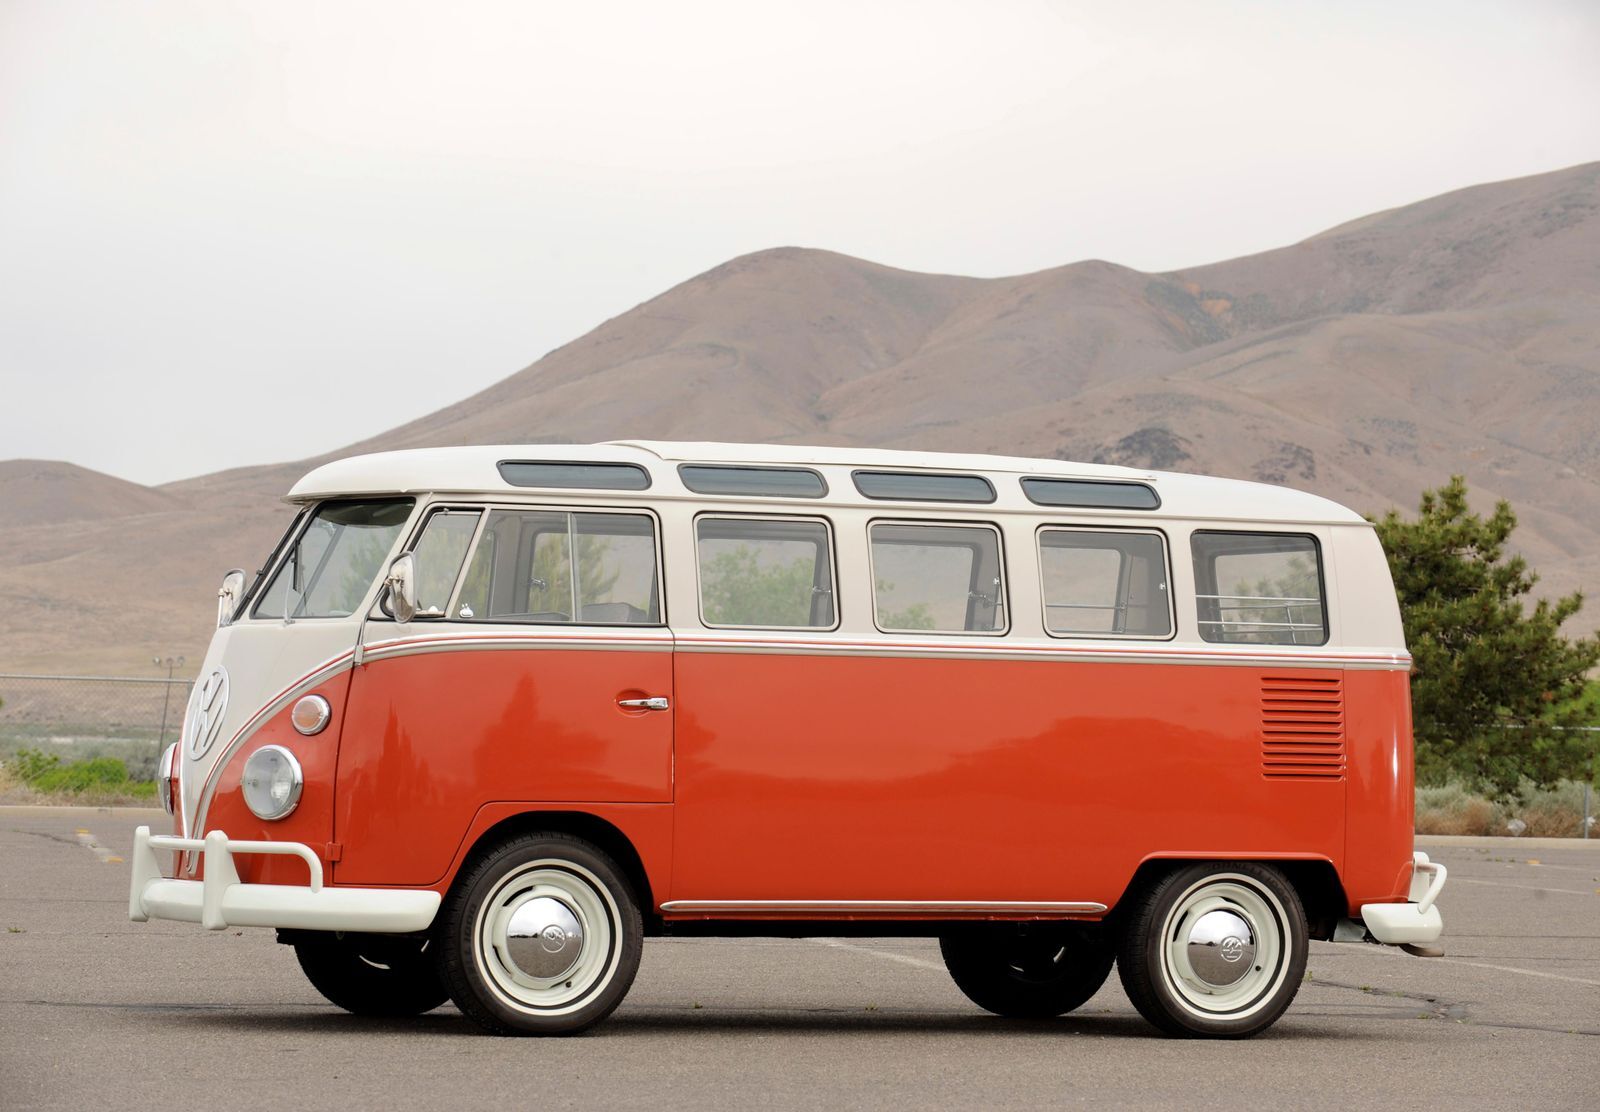 Uma versão do Apple Car lembrava o microônibus VW - O Apple Car poderia ter mudado a cara da indústria automobilística